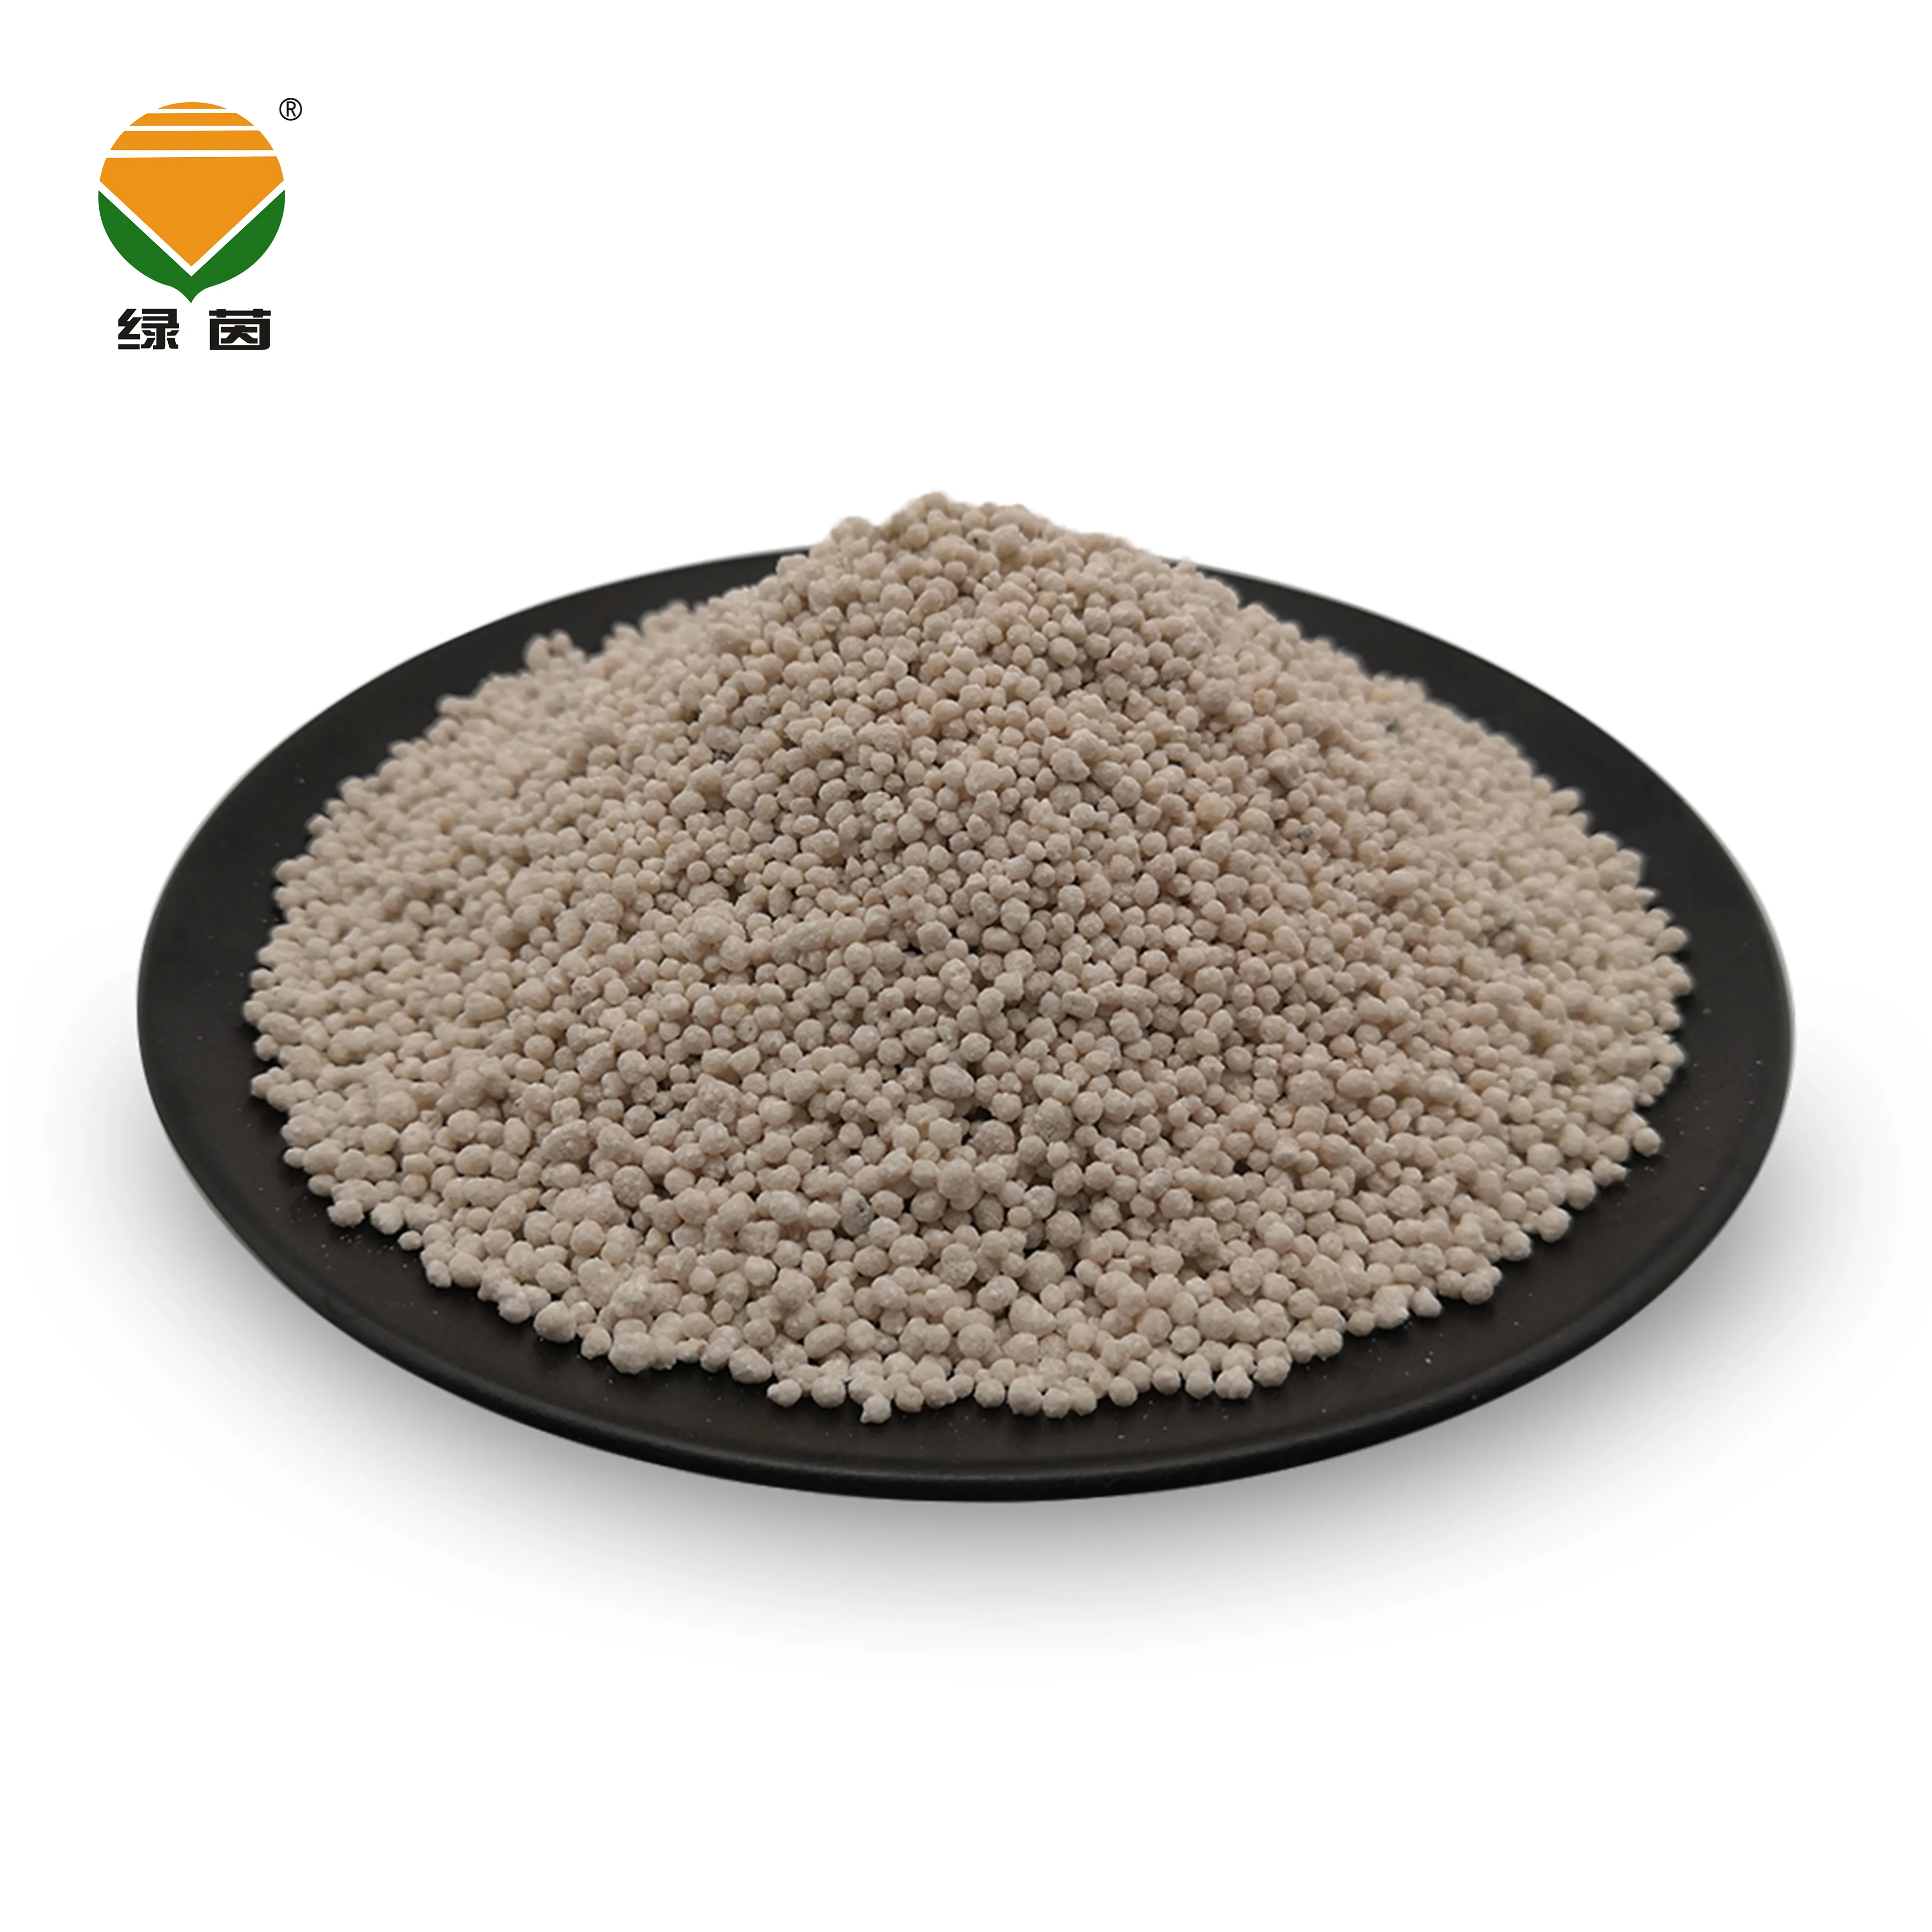 NPK 18-4-18 compuesto Granular fertilizante de lenta liberación para el césped o hierba